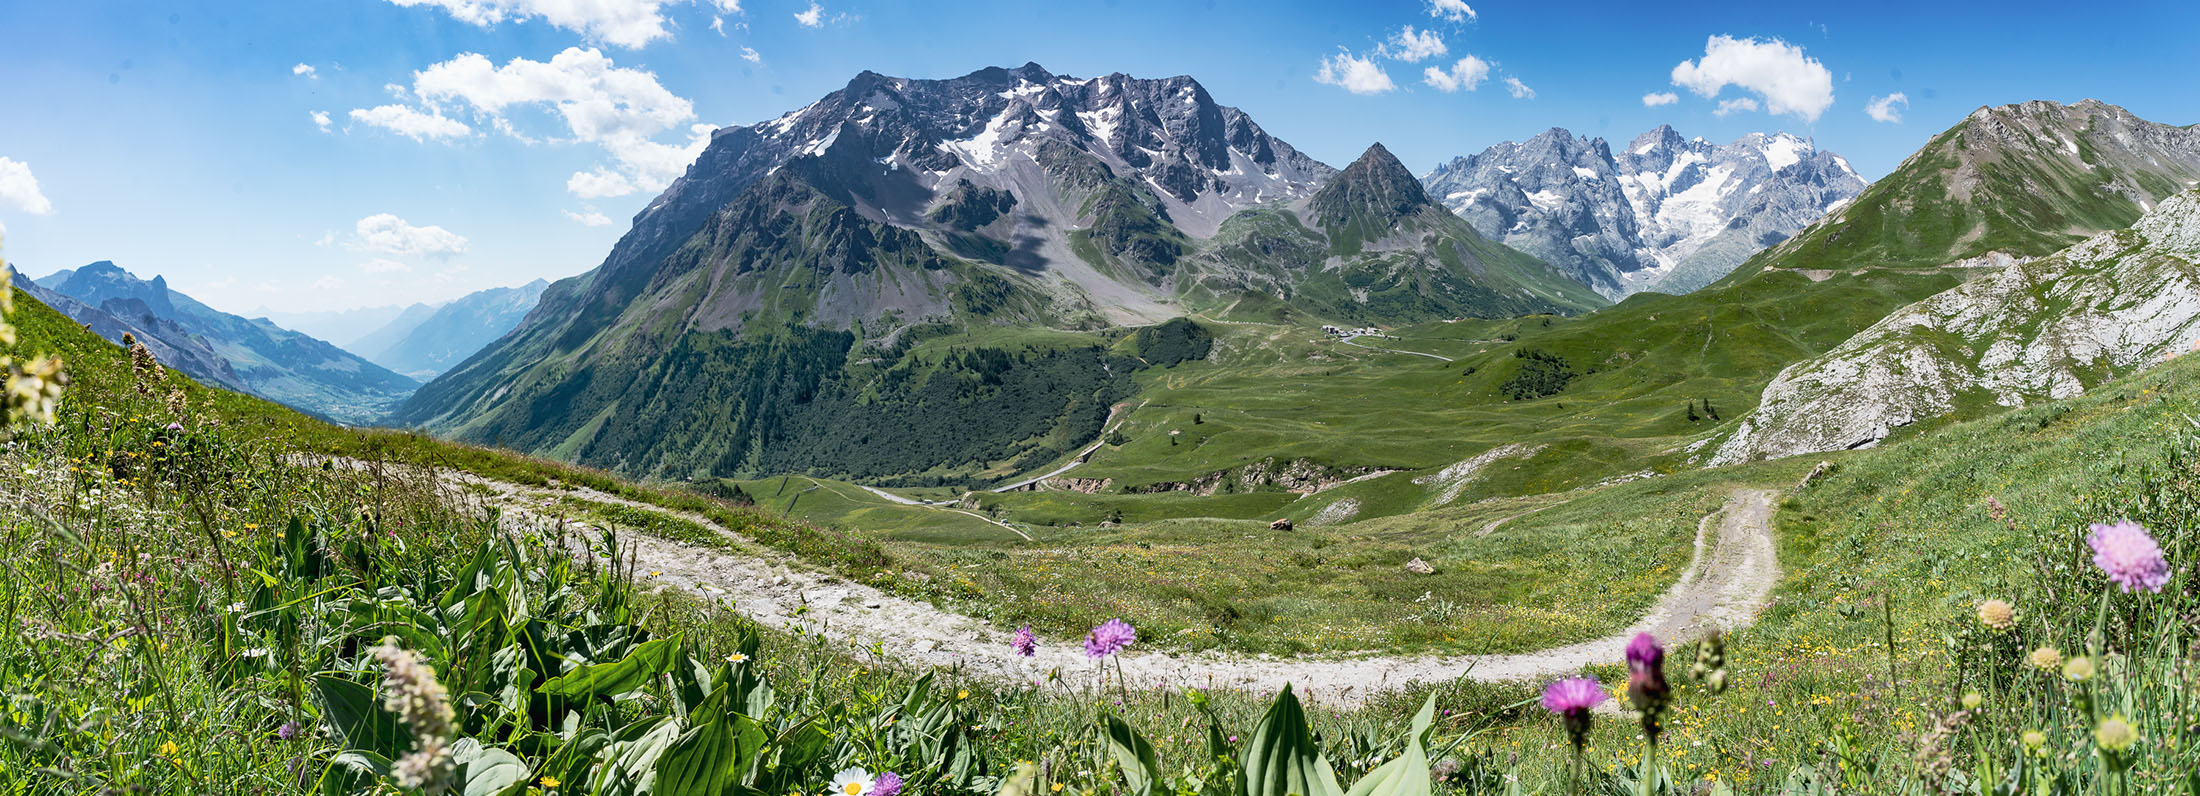 Le Pilgrimage graveltocht Ecrins Franse Alpen